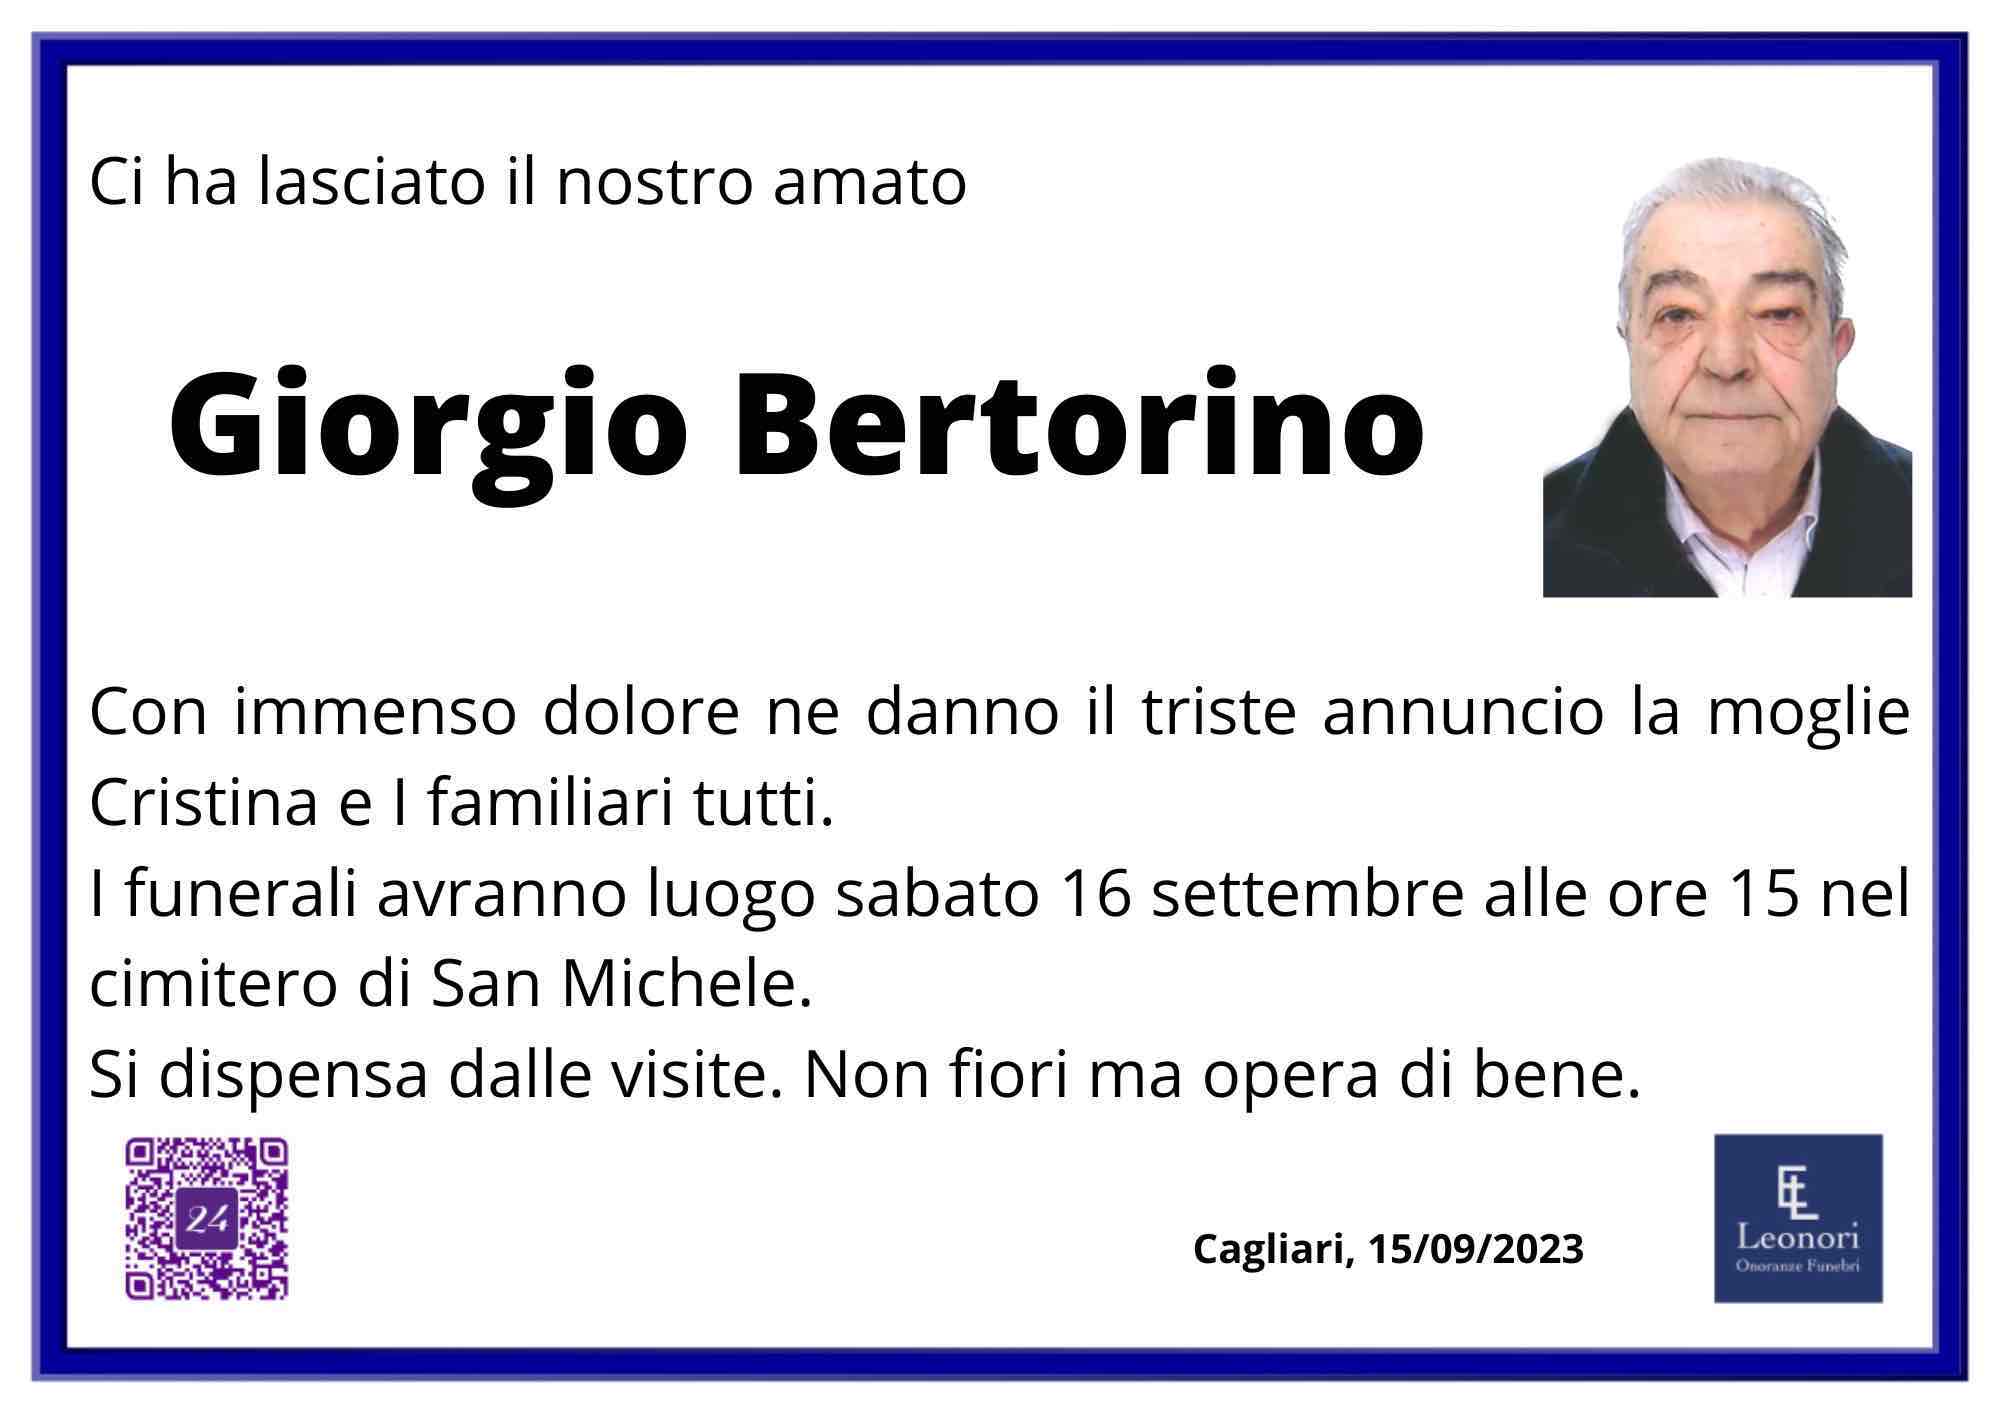 Giorgio Bertorino